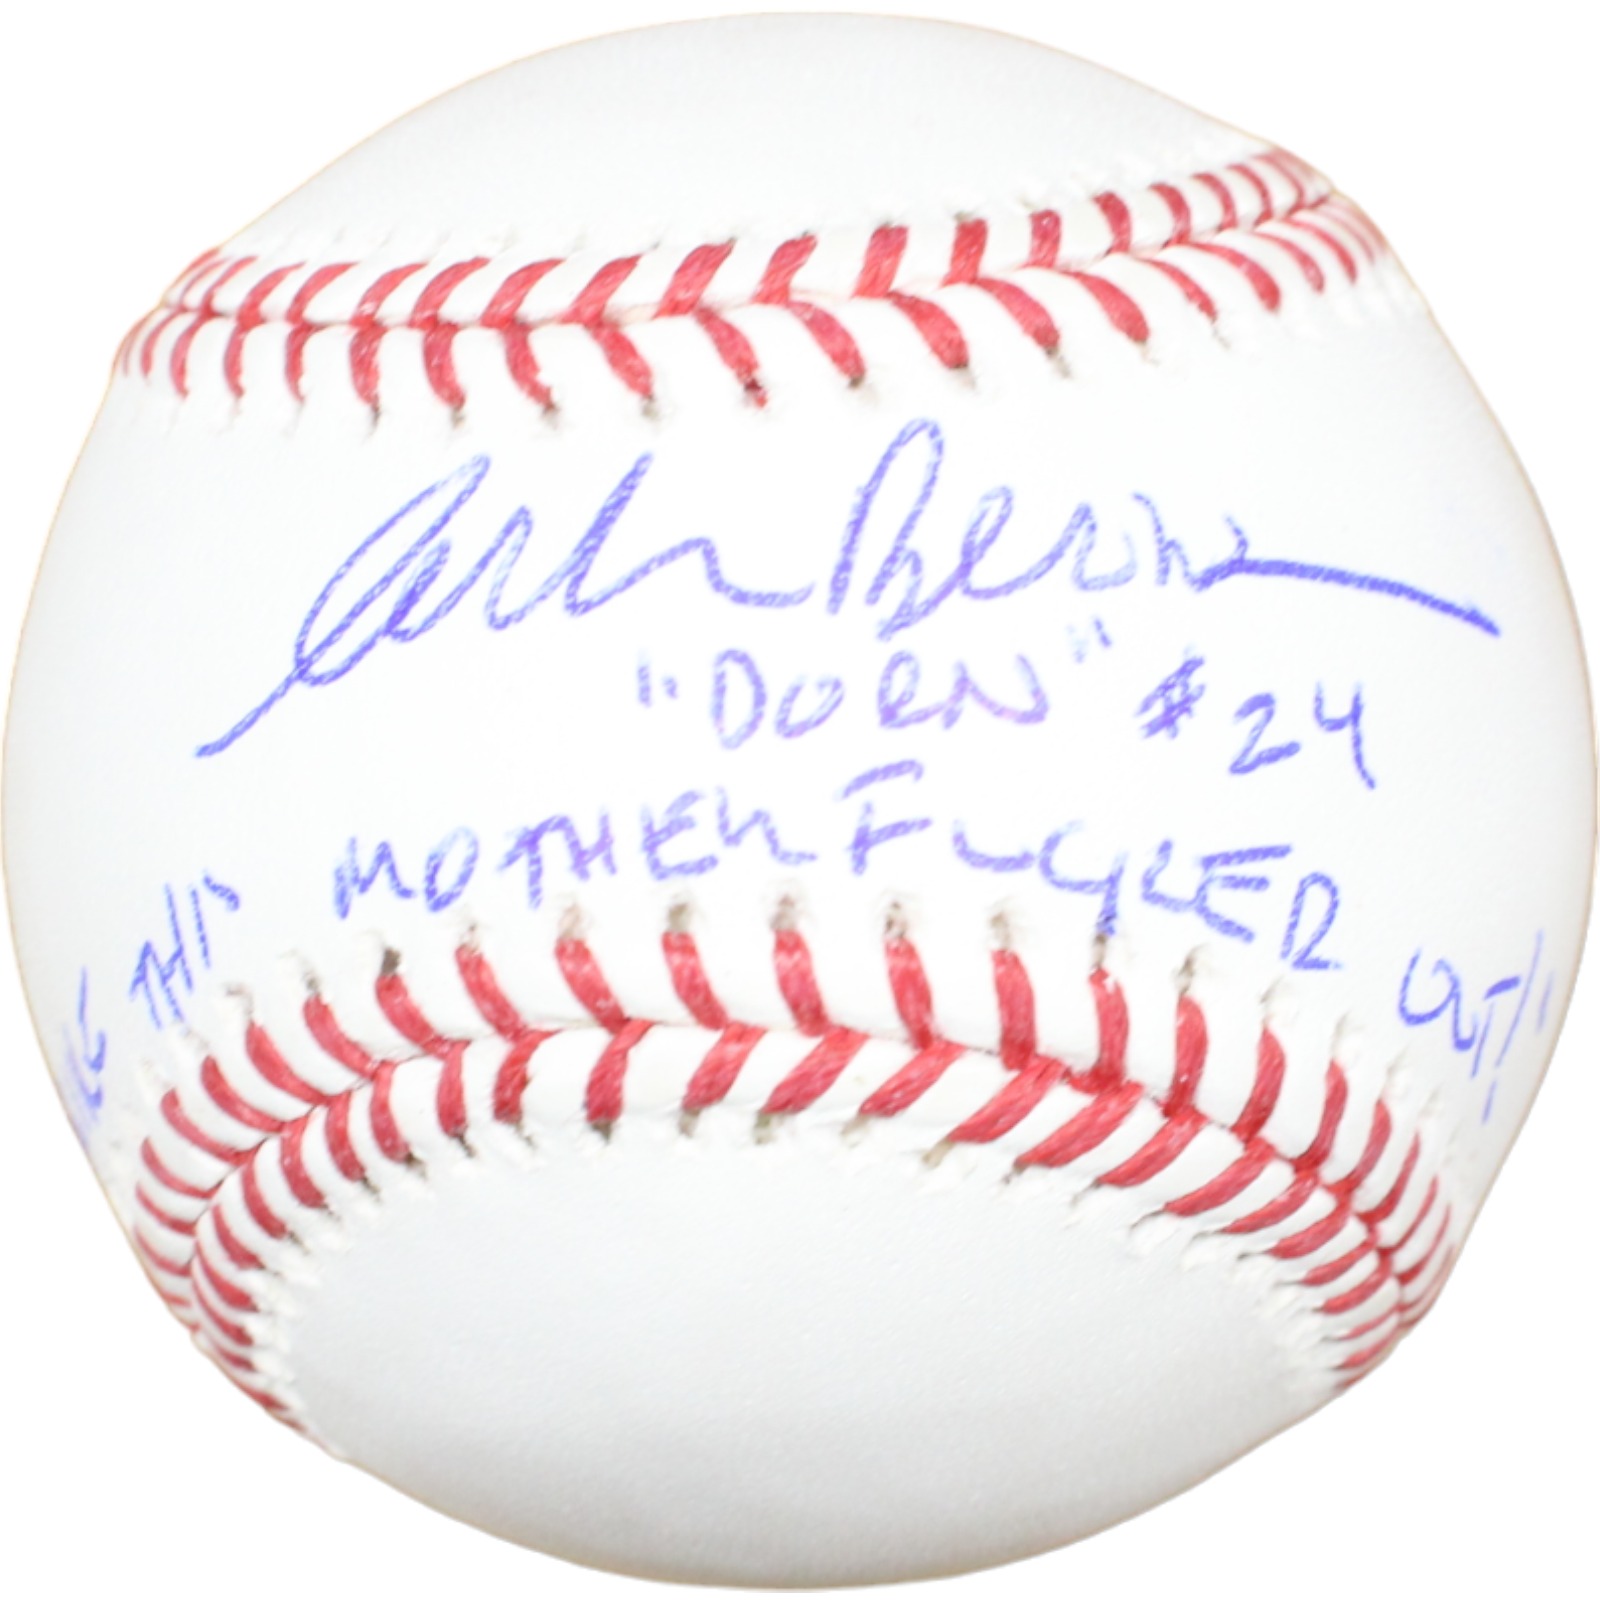 Corbin Bernsen Autographed/Signed Baseball STMFO Beckett